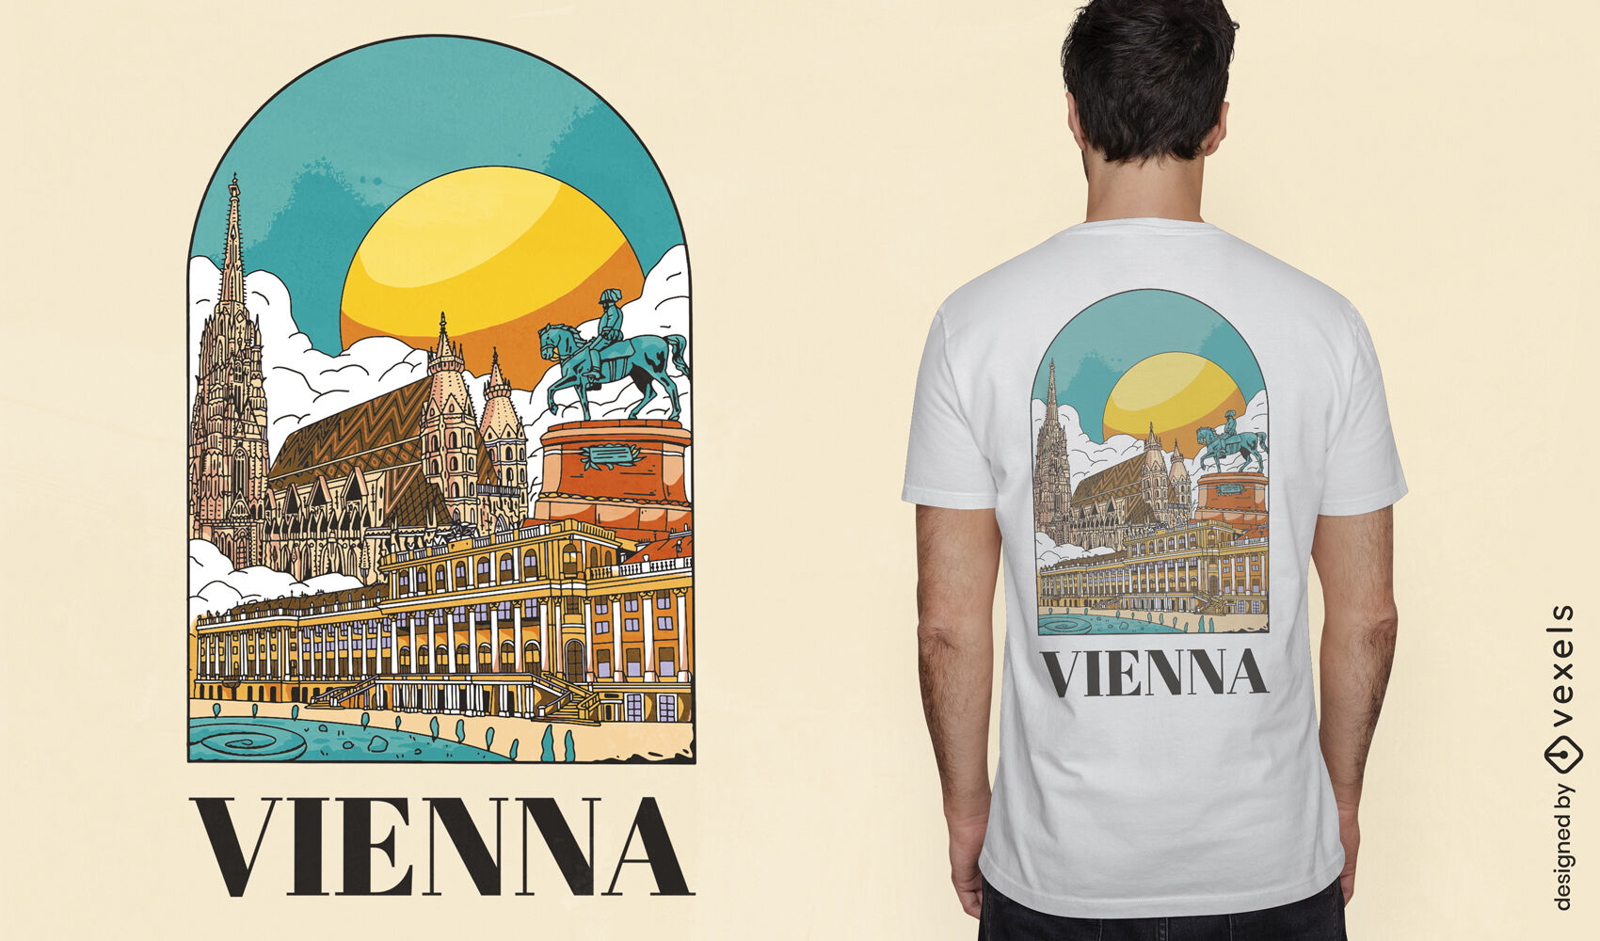 Vienna landscape t-shirt design